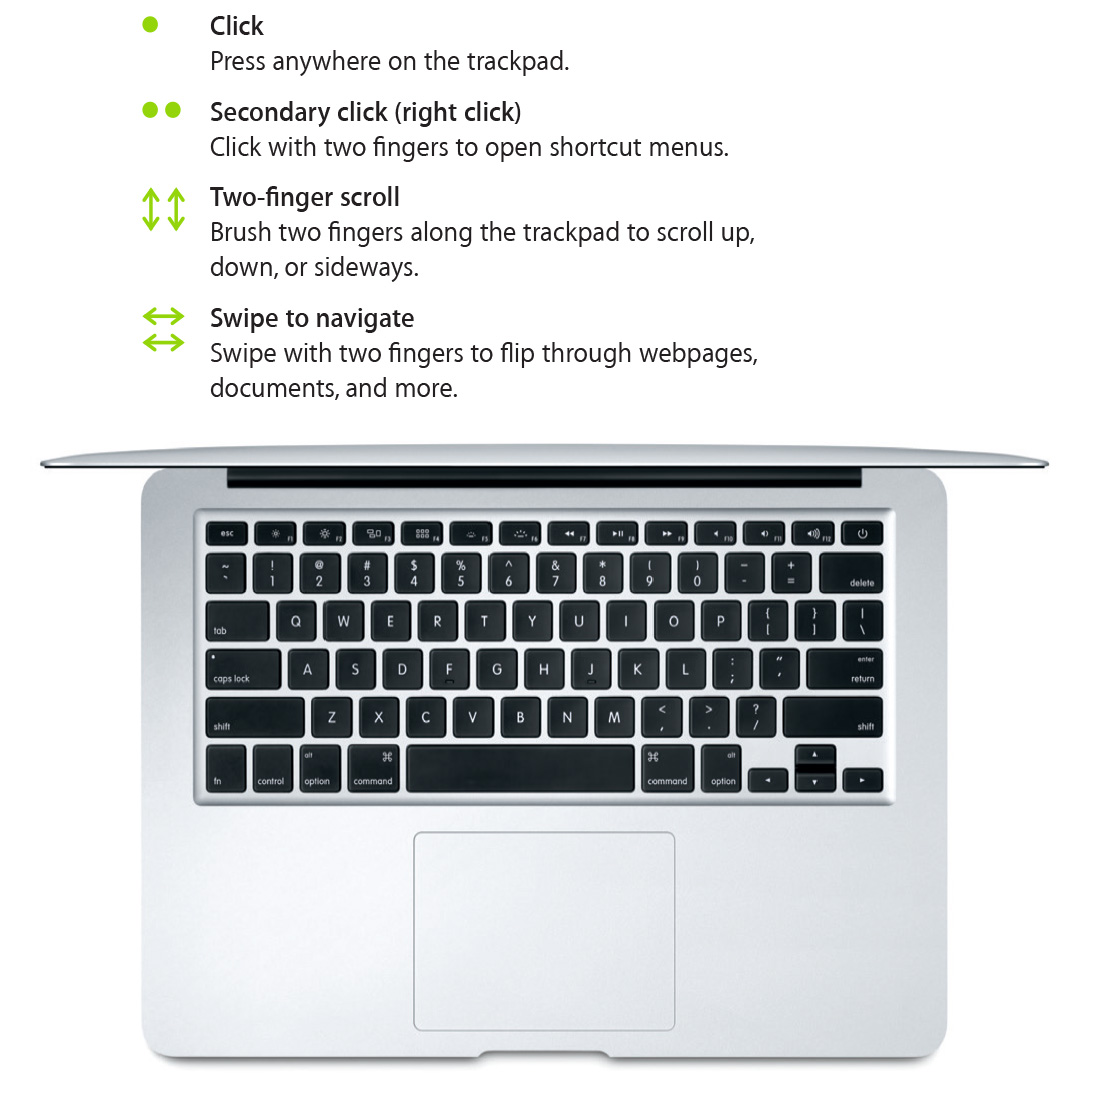 macbook air | apple macbook air | macbook air price | MacBook Air A1466